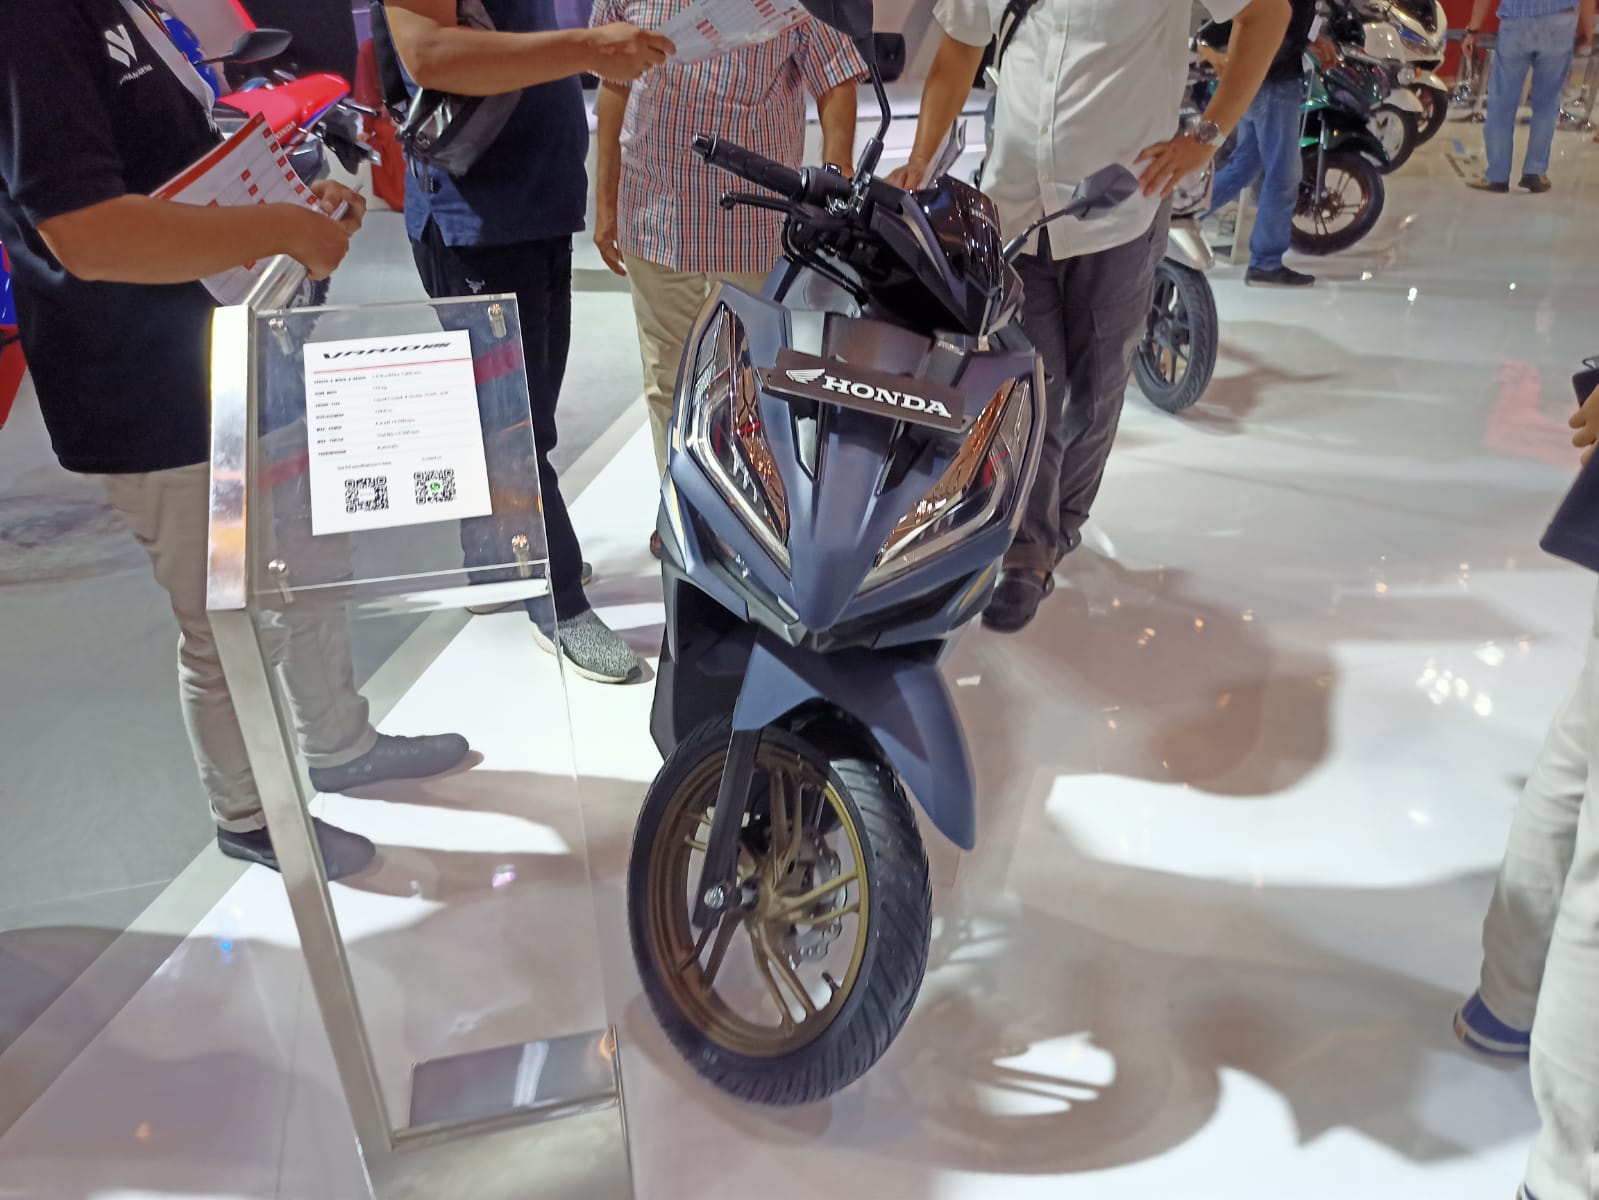 Yamaha Lexi 125, Skuter Maxi Harga Murah Tapi Gagal Jegal Vario 125